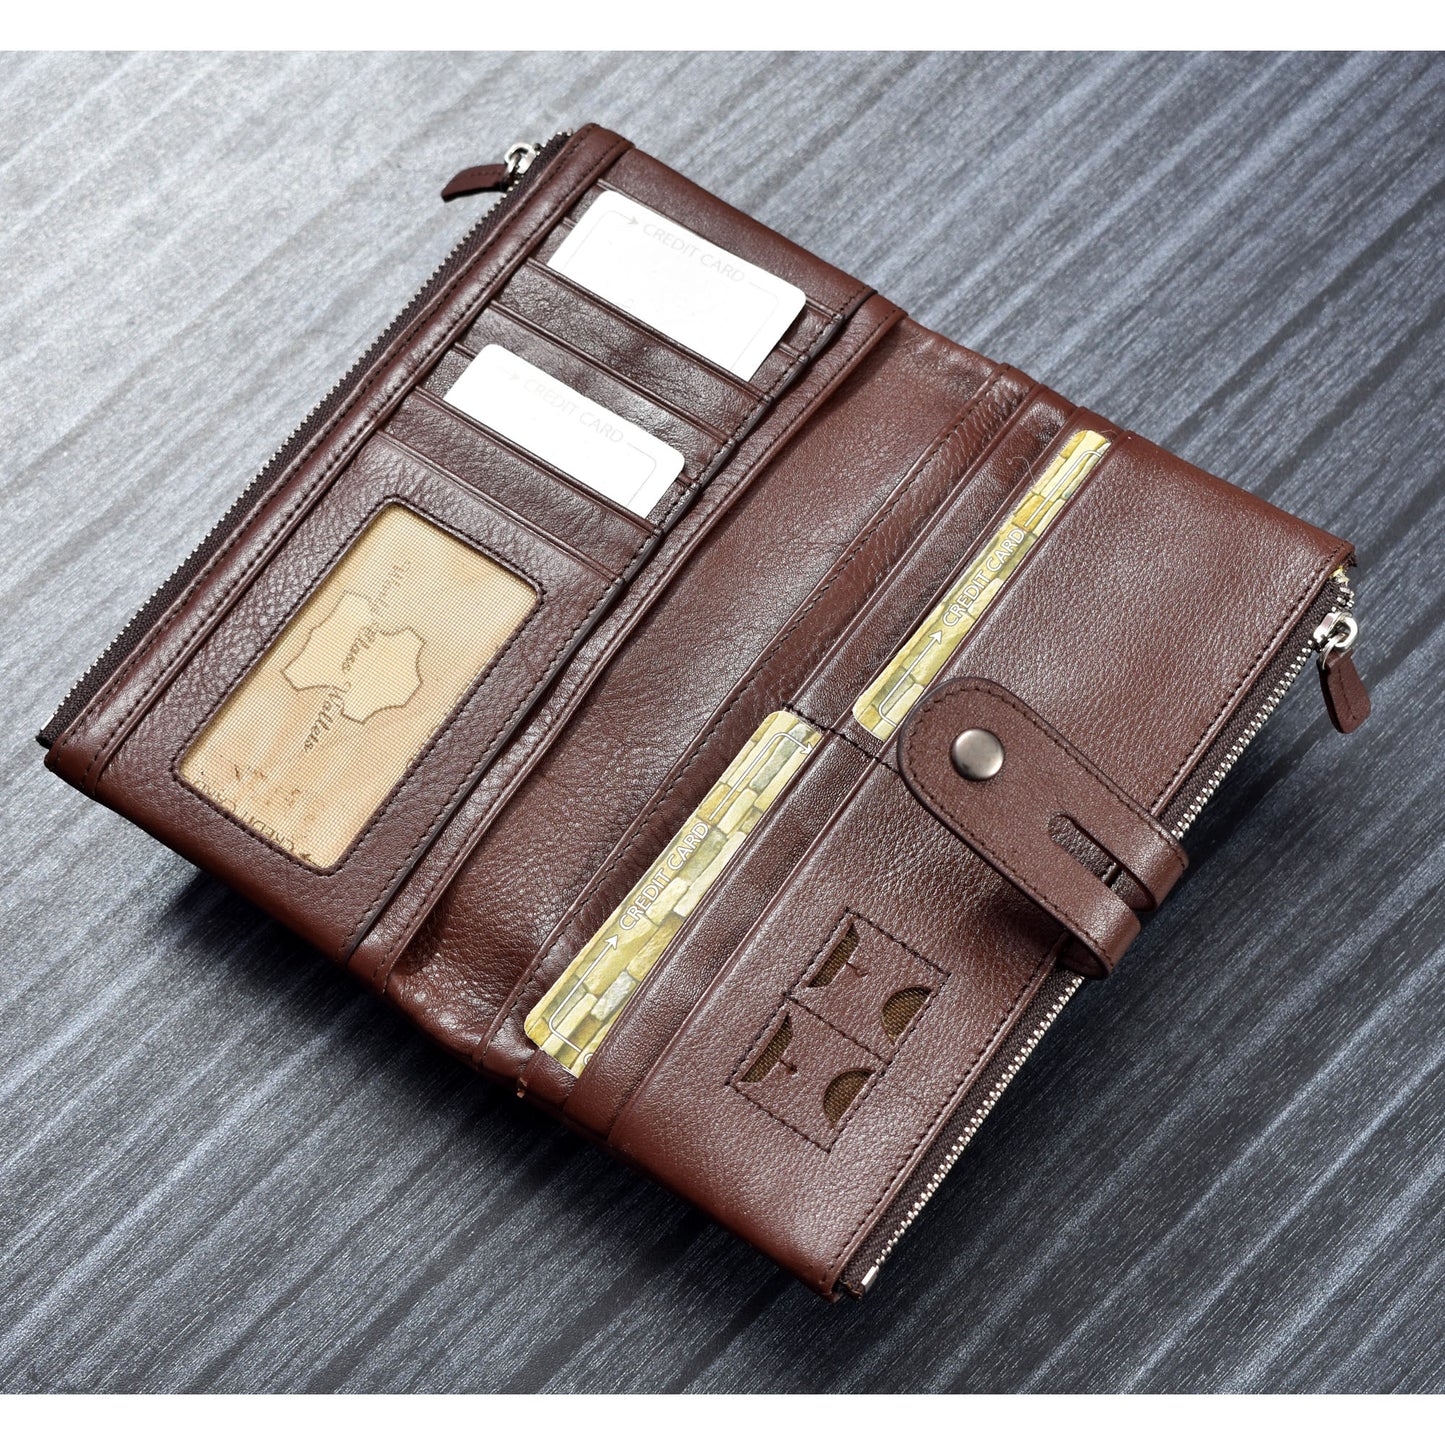 Premium Quality Original Leather Double Zipper Long Wallet | JP Wallet 52